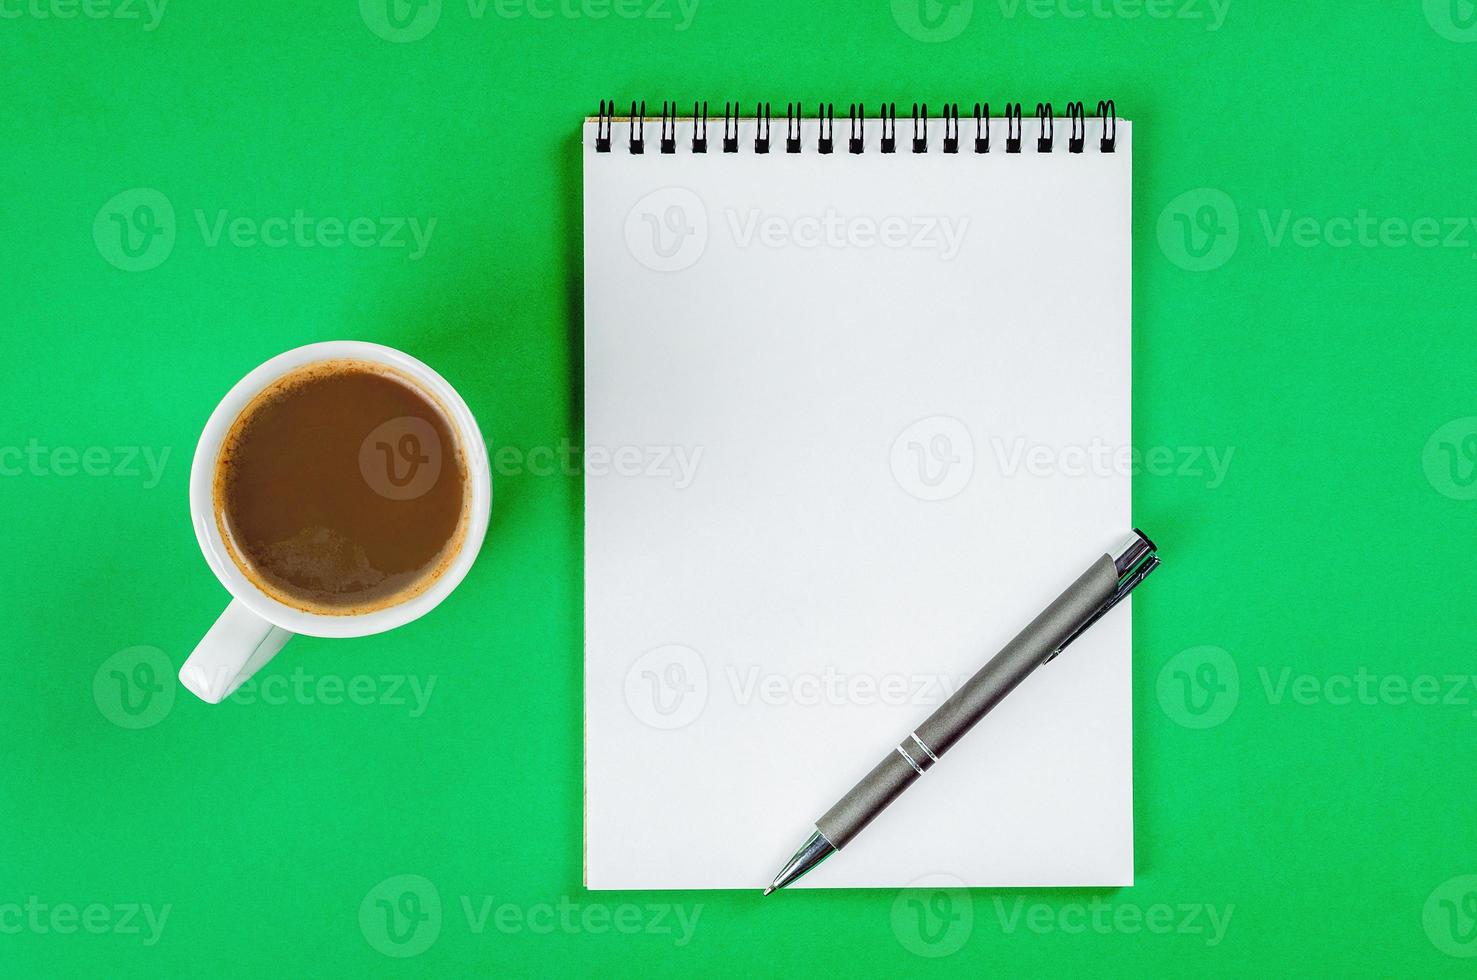 bloc-notes avec des pages blanches blanches, un stylo et une tasse de café sur fond vert clair. photo